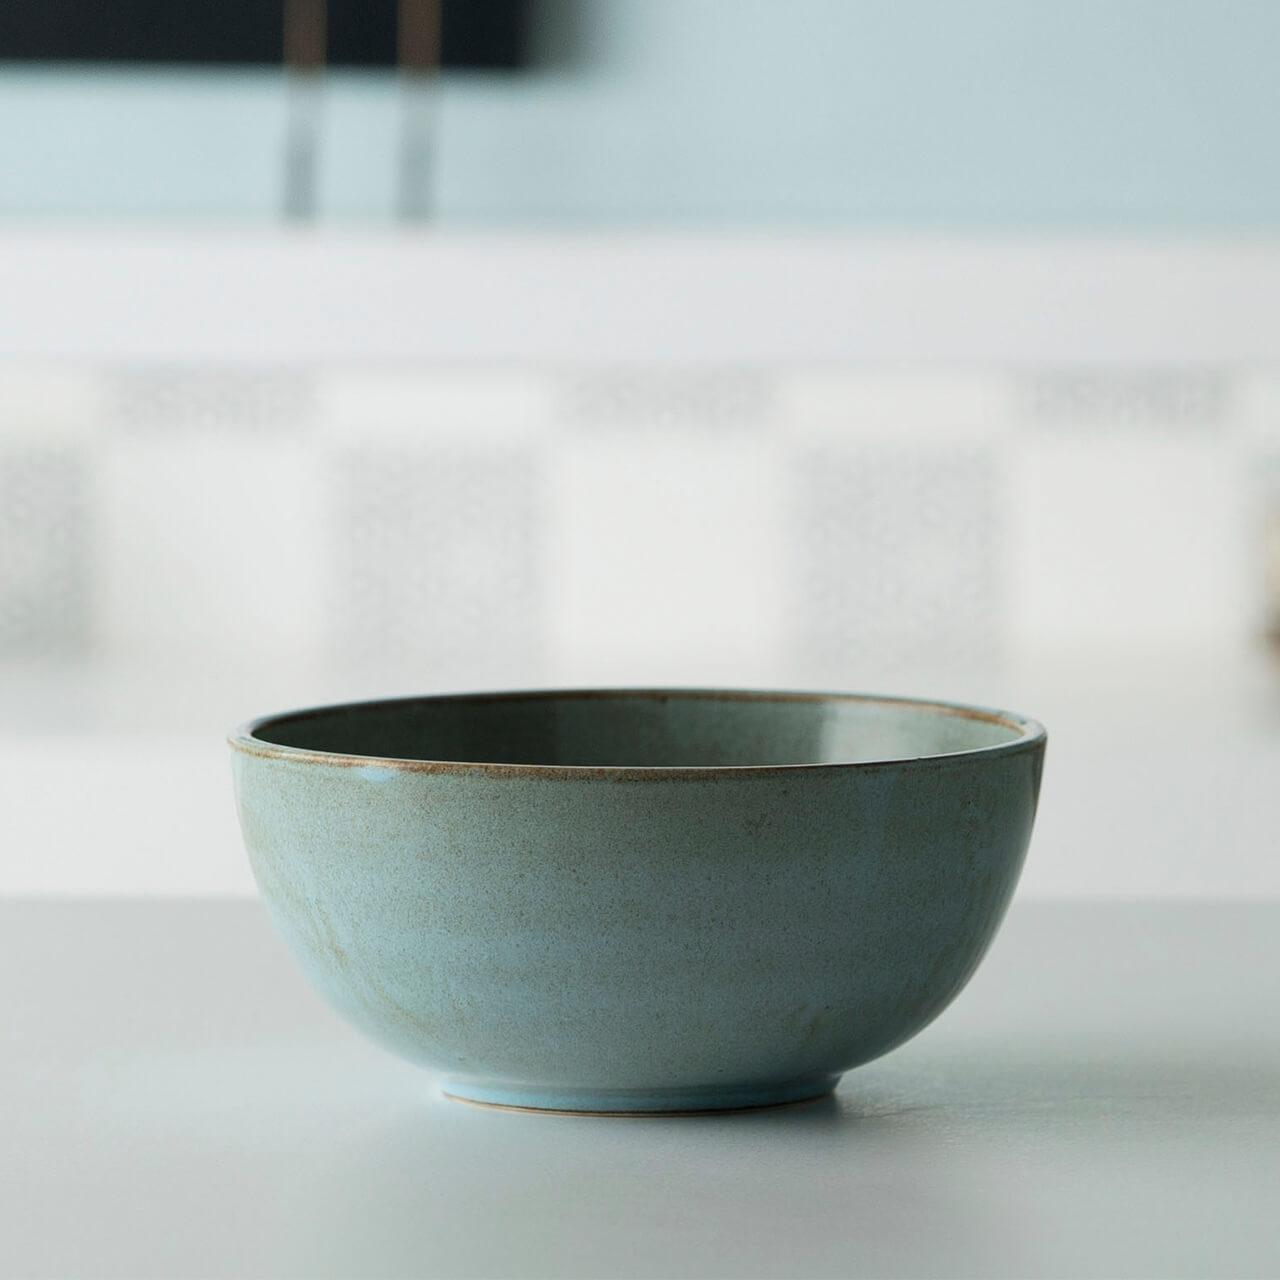 aqua rustic ceramic serving bowl- small